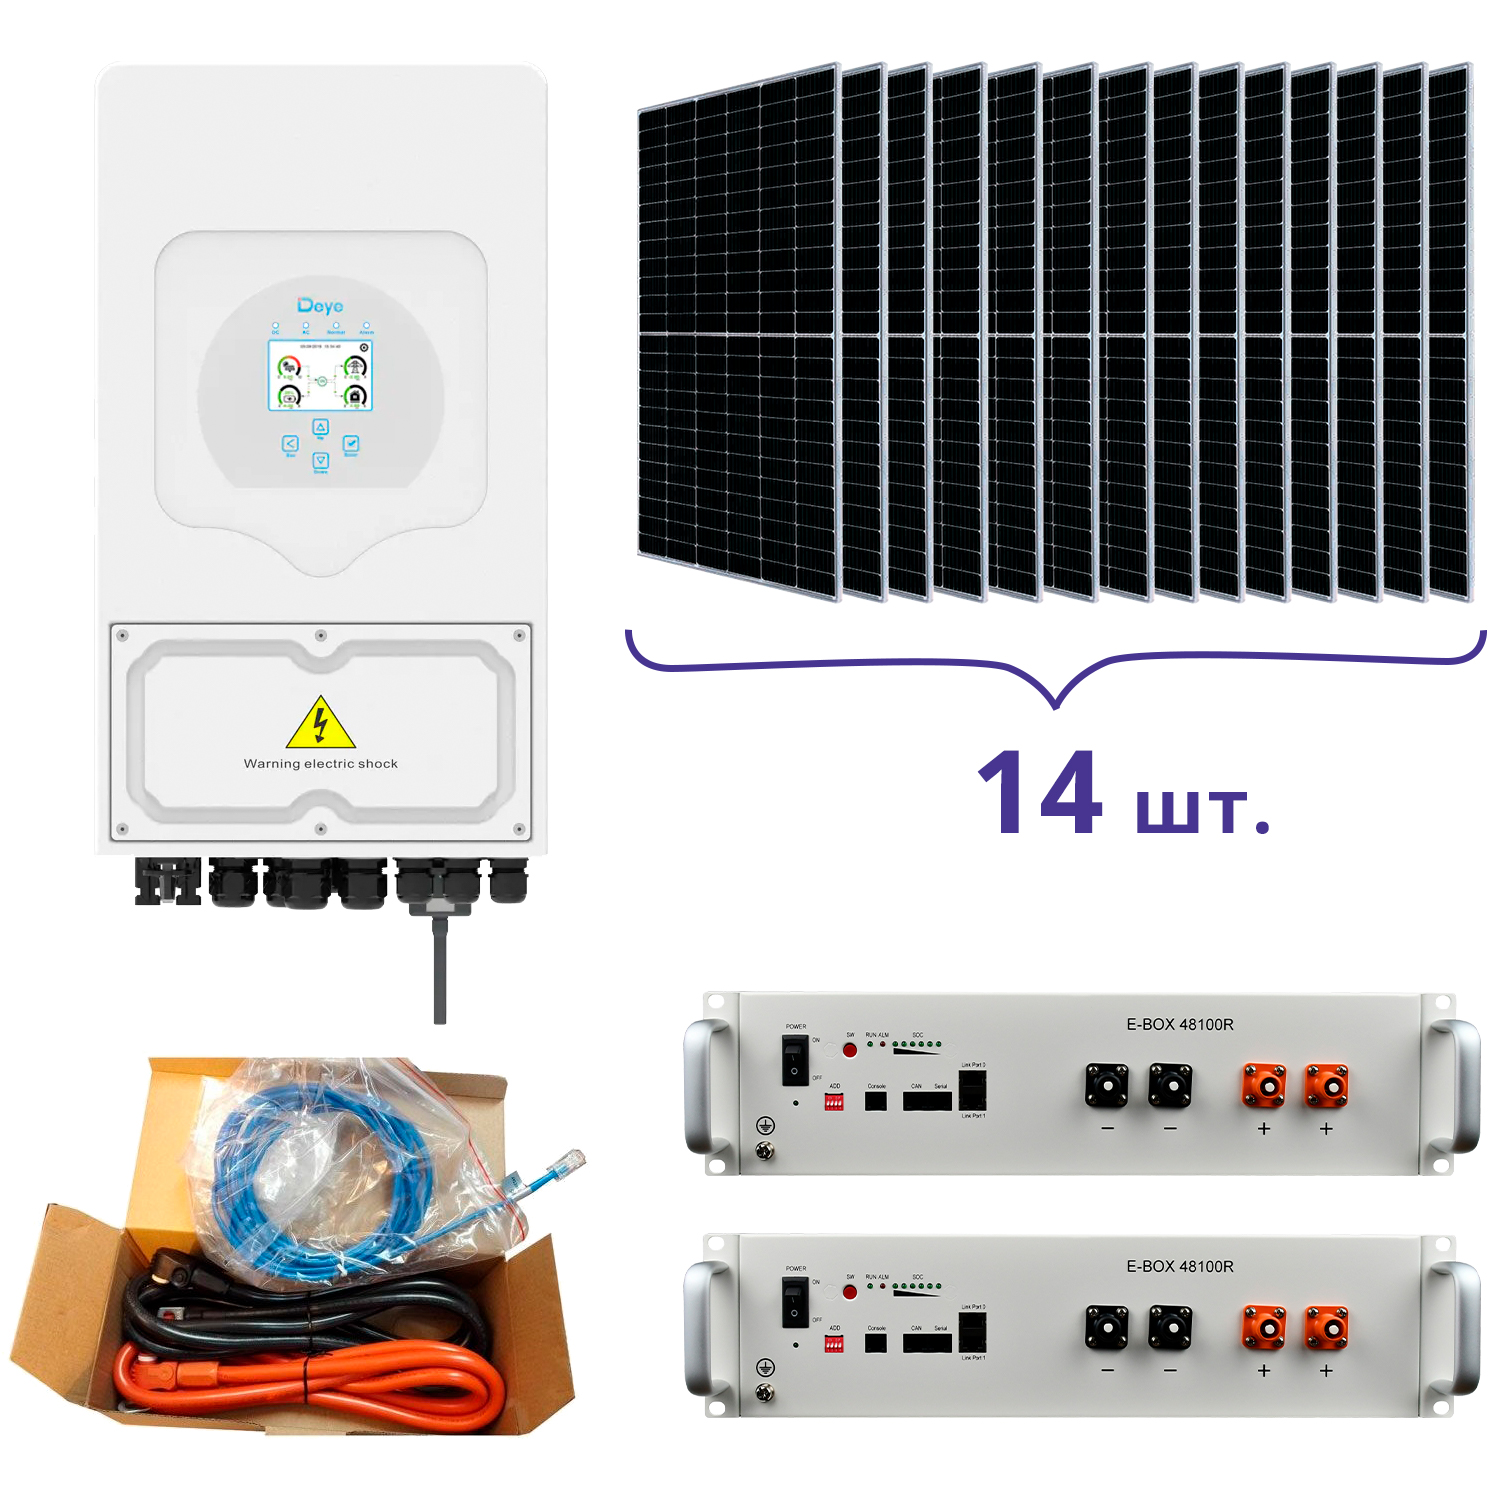 Інструкція система резервного живлення Deye SUN-5K-SG03LP1-EU+Pytes E-BOX-48100R-2шт.+Battery Cable Kit-1шт.+JA Solar JAM72S20-460/MR 460 Wp, Mono-14шт.